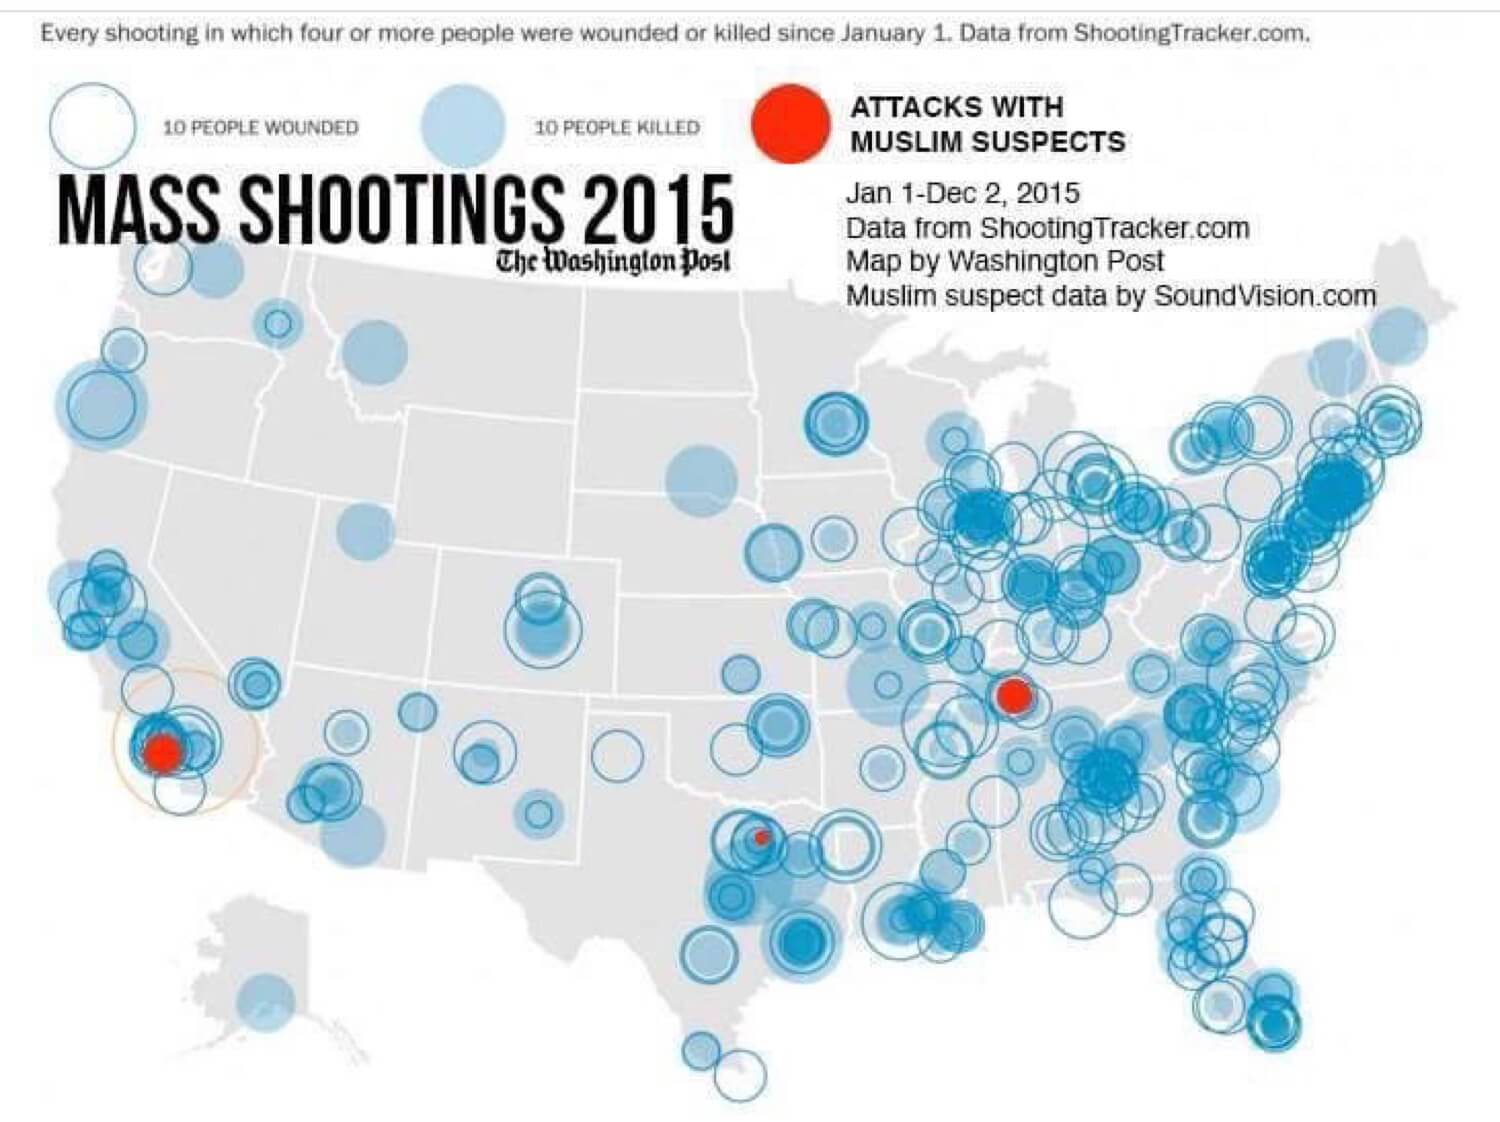 US shootings with muslims